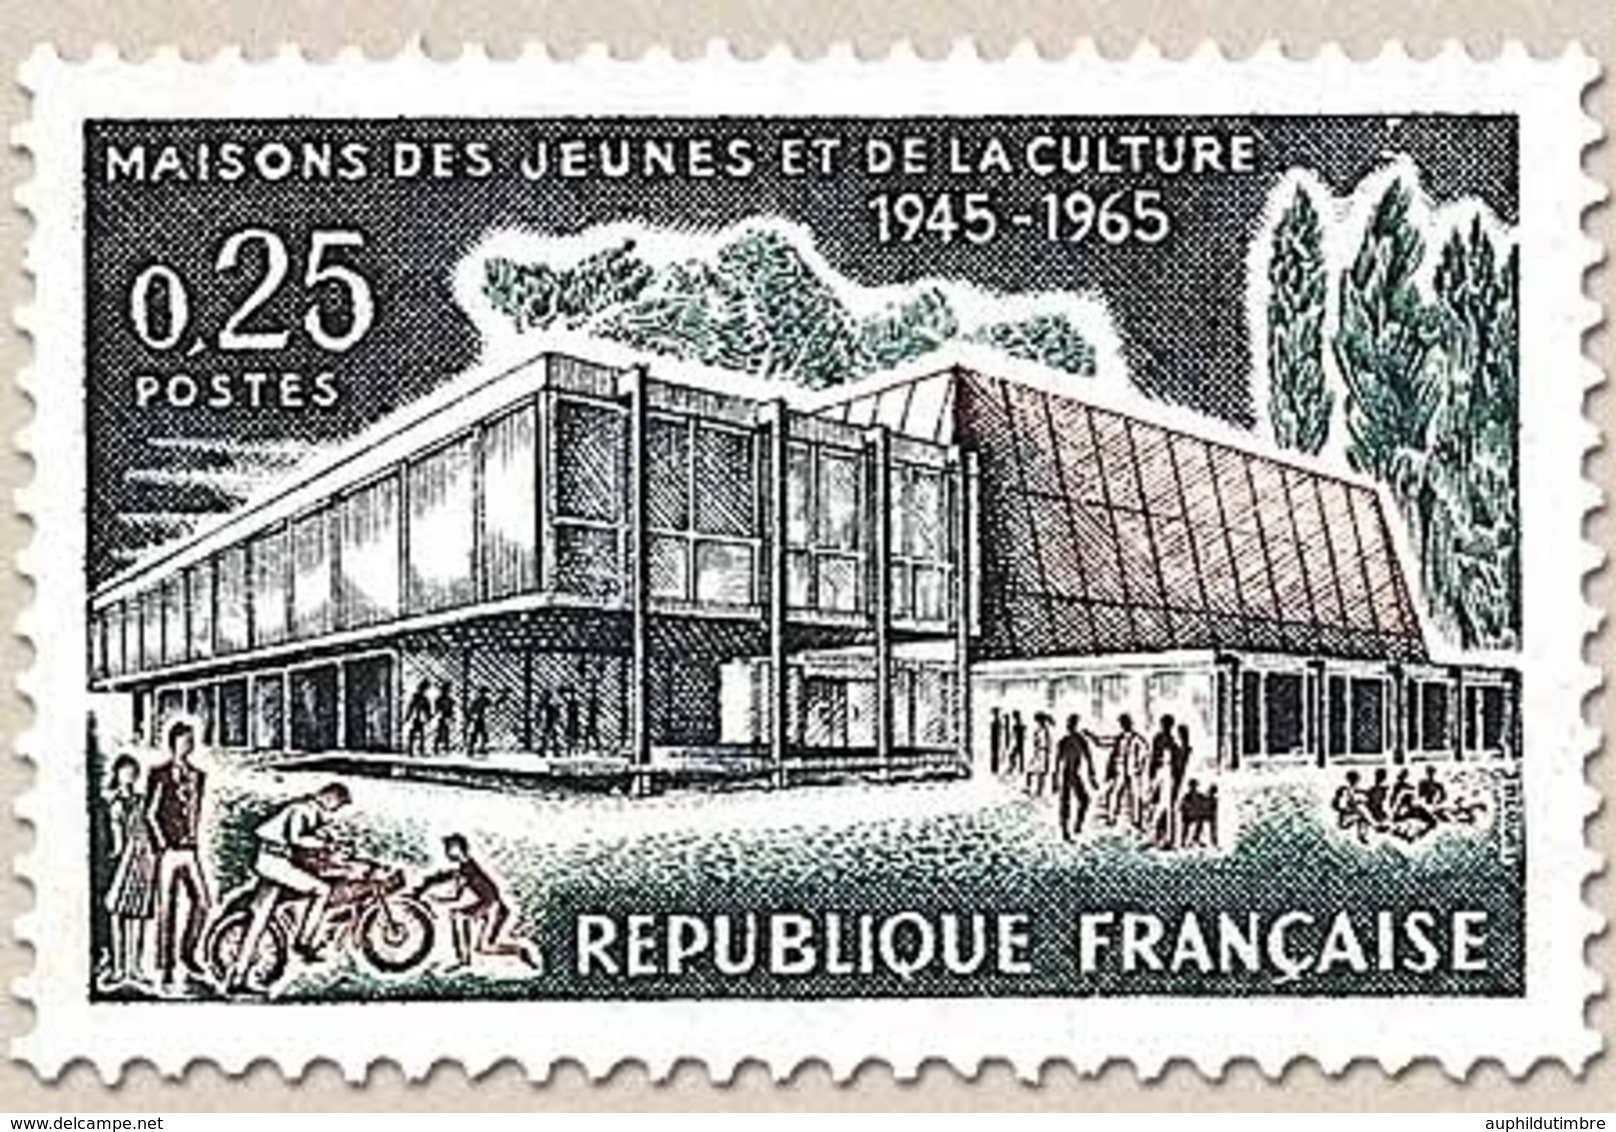 Maisons Des Jeunes Et De La Culture. Troyes : Maison Des Jaunes Et De La Culture. 25c. Y1448 - Unused Stamps